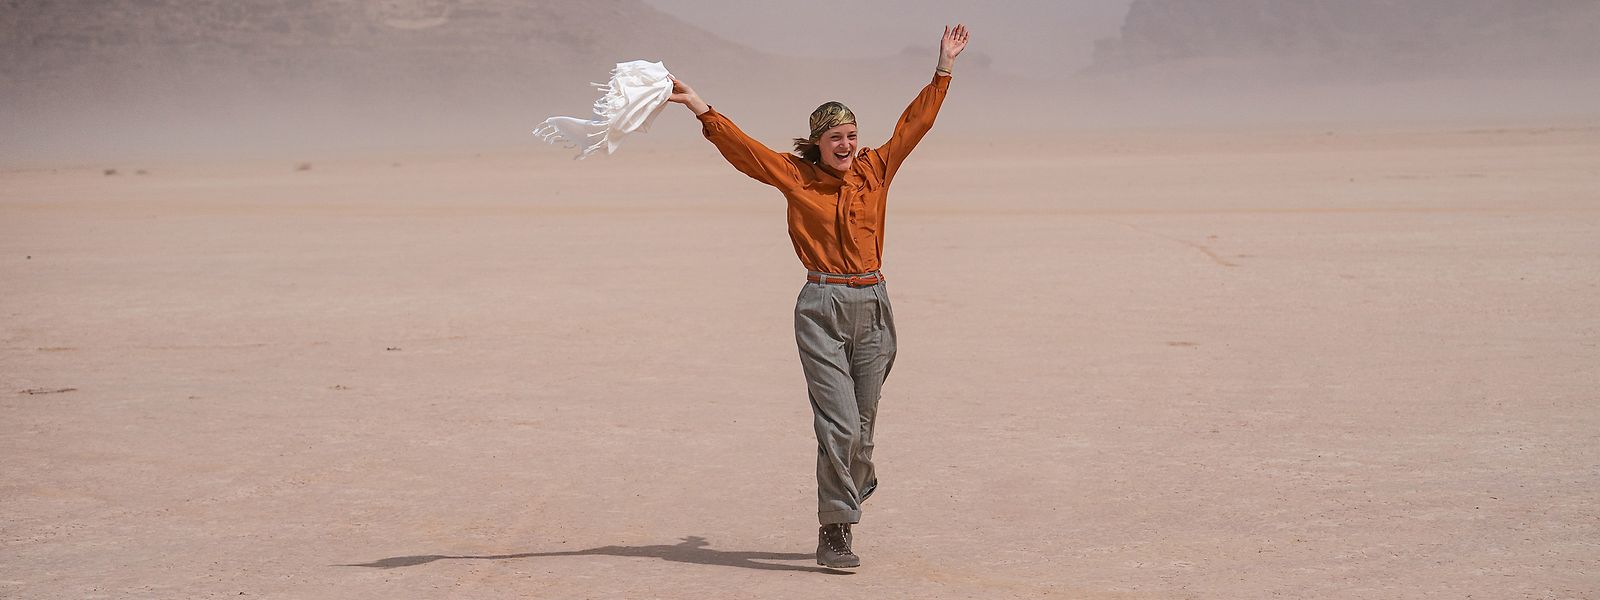 In der Wüste findet sie wieder zu sich selbst. Der Ort der Leere wird für Ingeborg Bachmann (Vicky Krieps) zur Befreiung und Erlösung.